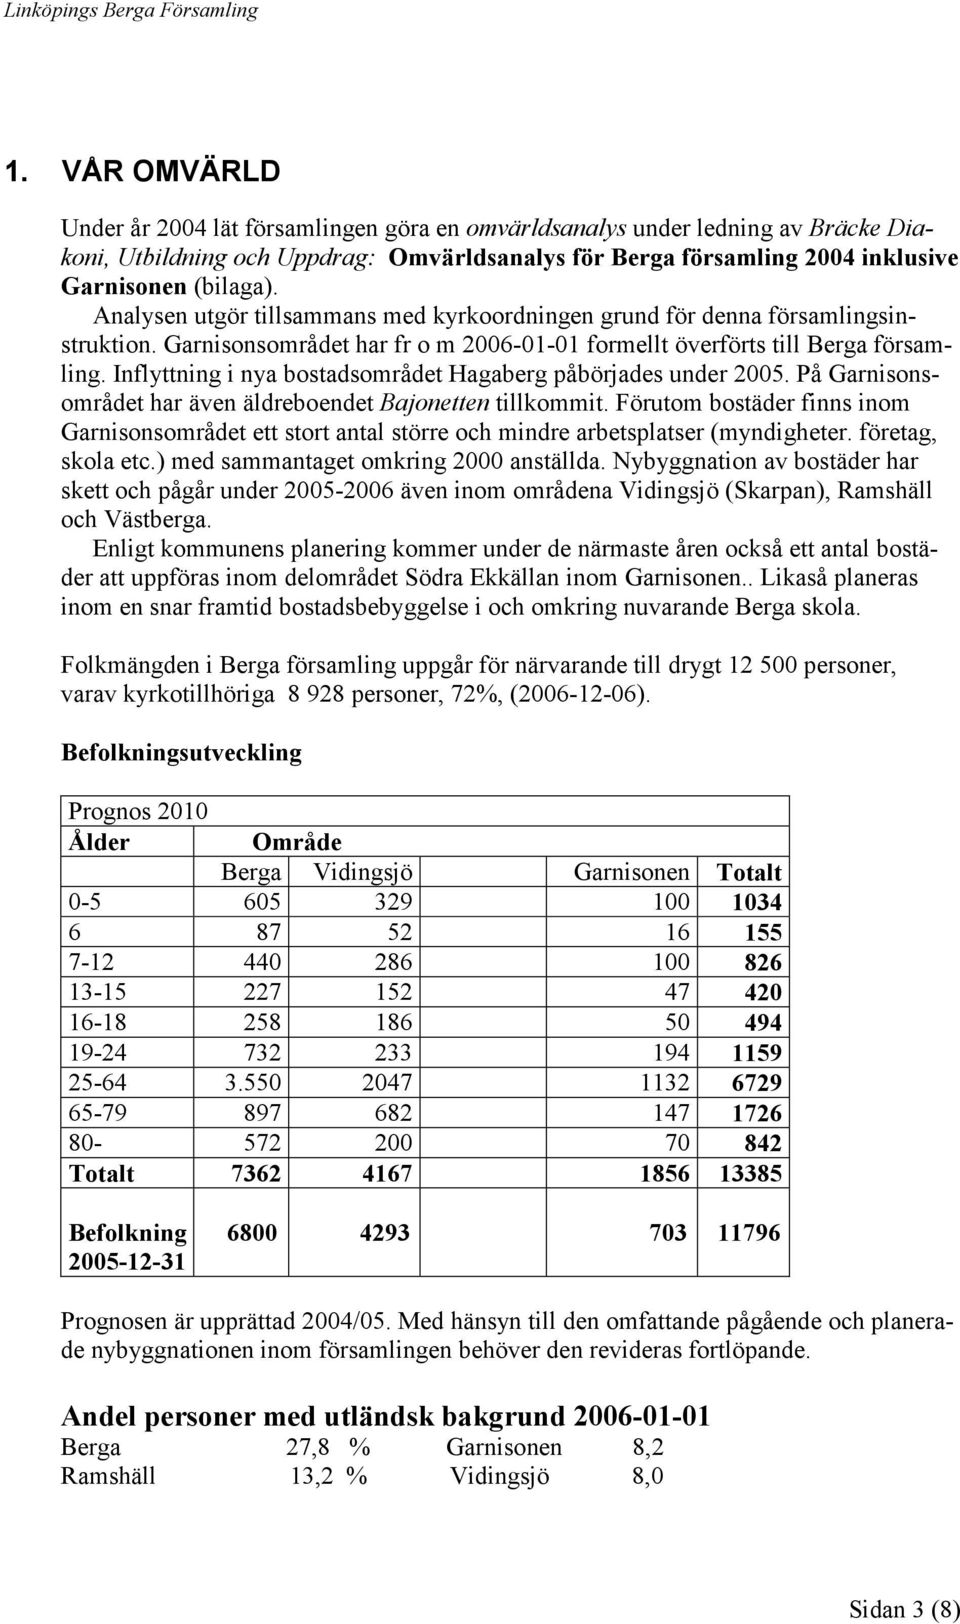 Inflyttning i nya bostadsområdet Hagaberg påbörjades under 2005. På Garnisonsområdet har även äldreboendet Bajonetten tillkommit.